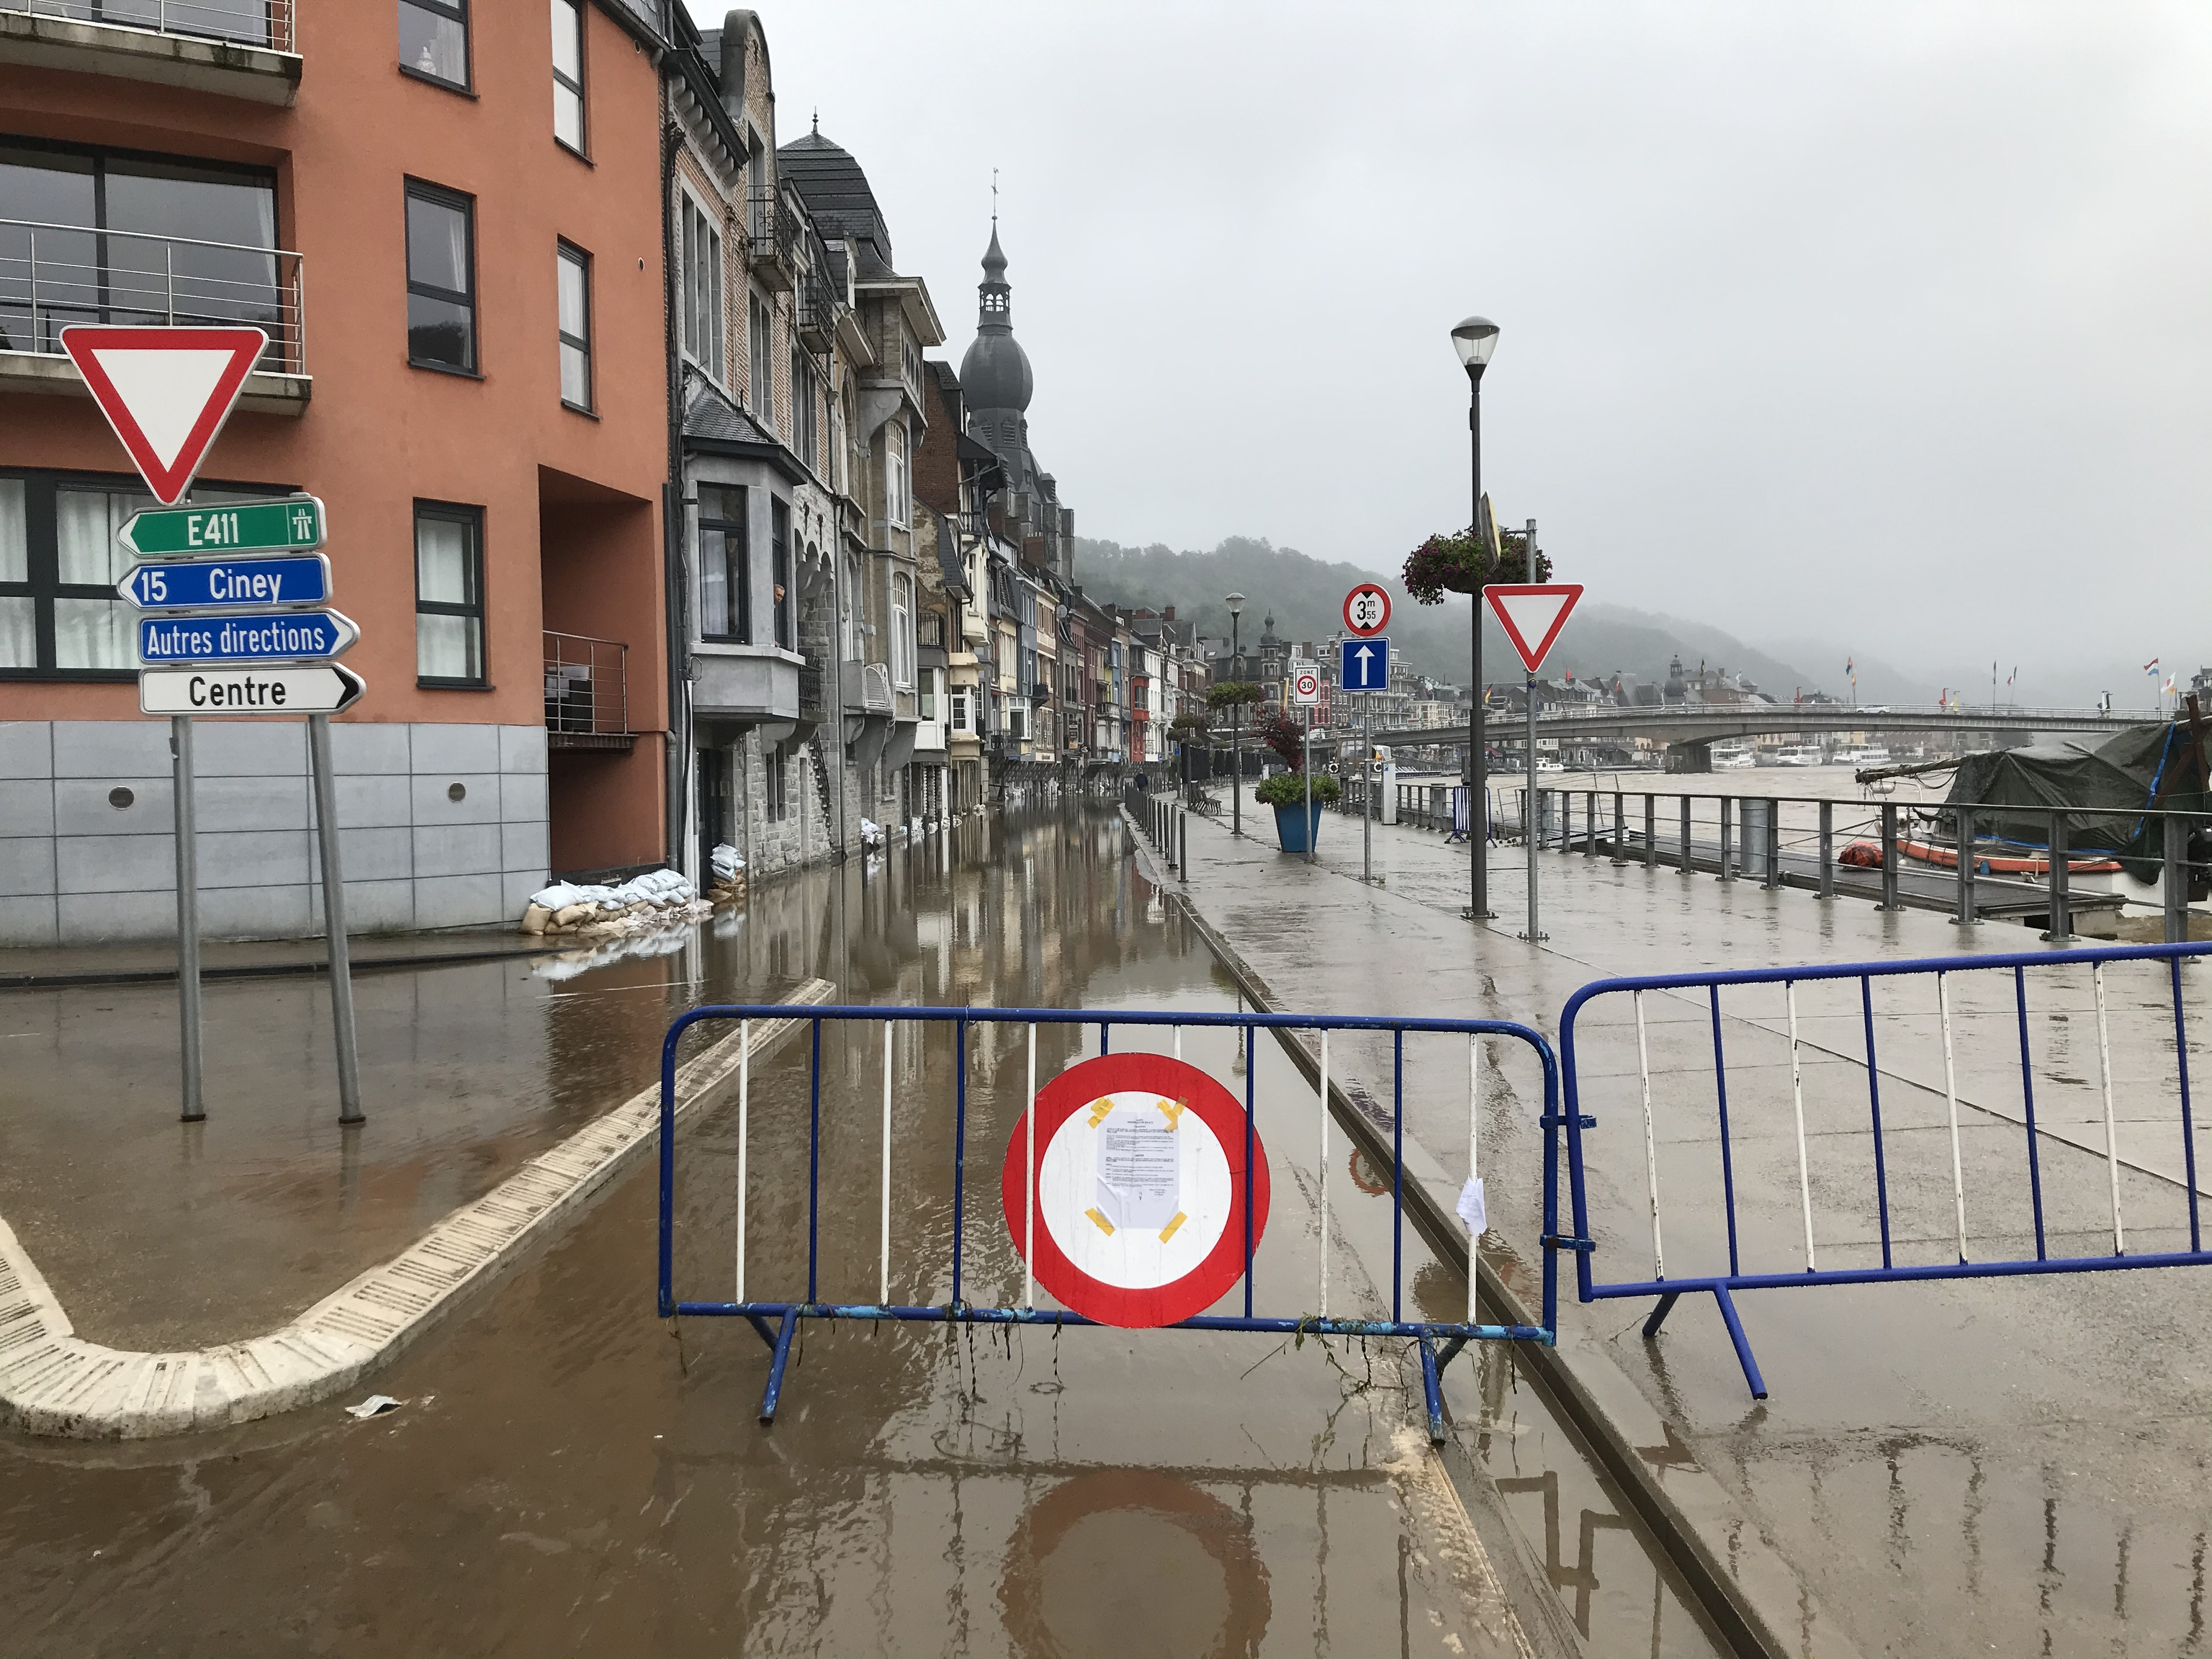 Archiv: Bereits vergangene Woche hatte es in der belgischen Stadt Dinant nach heftigen Regenfällen strake Überschwemmungen gegeben | dpa